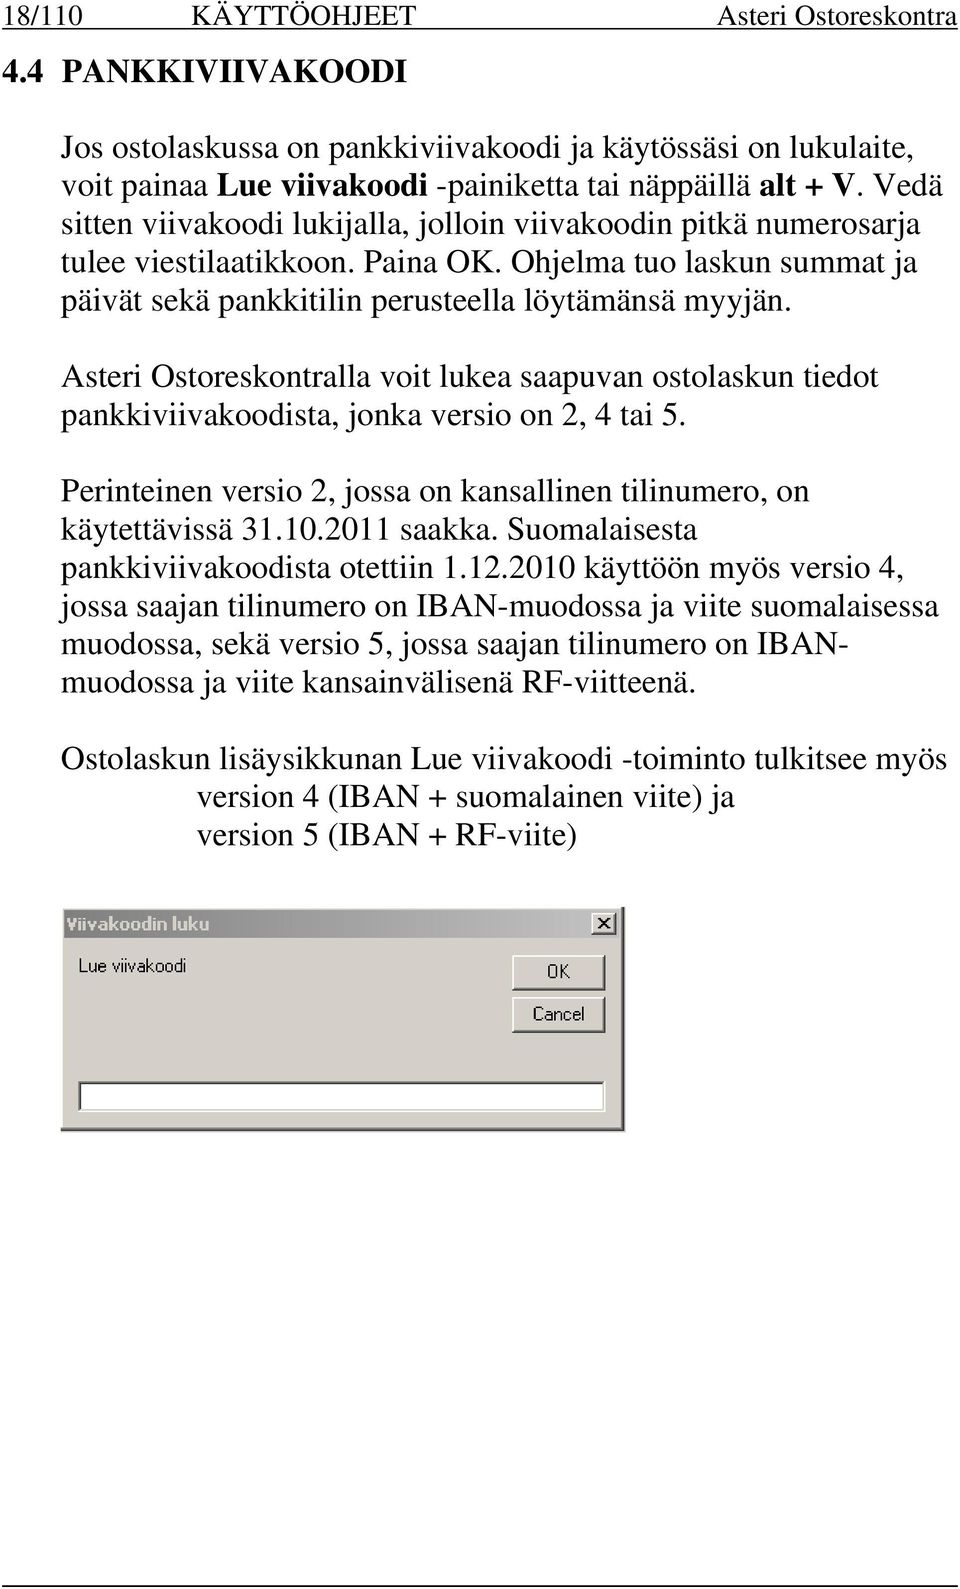 Asteri Ostoreskontralla voit lukea saapuvan ostolaskun tiedot pankkiviivakoodista, jonka versio on 2, 4 tai 5. Perinteinen versio 2, jossa on kansallinen tilinumero, on käytettävissä 31.10.